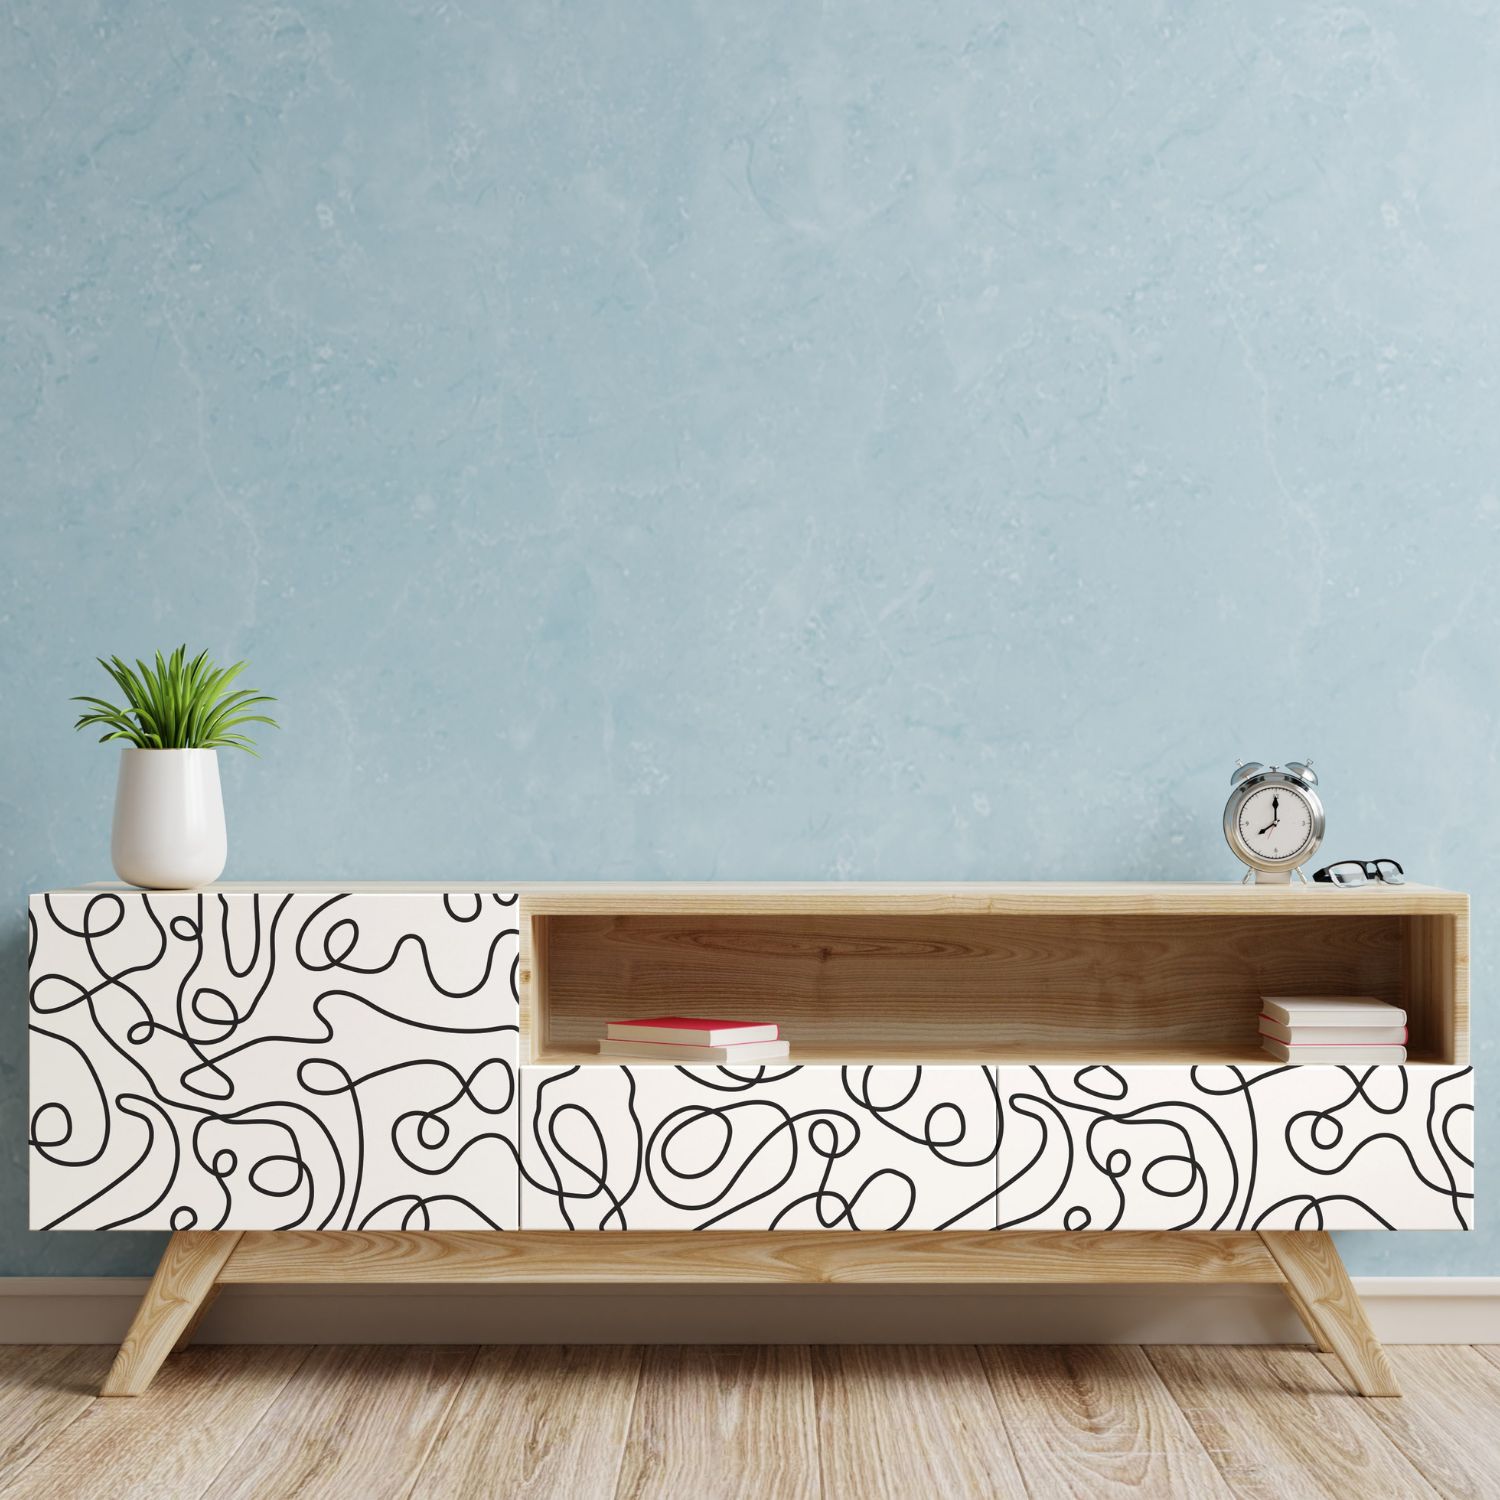 PP38-papier-peint-adhesif-decoratif-revetement-vinyle-dessin-au-fil-de-fer-abstrait-renovation-meuble-mur-6